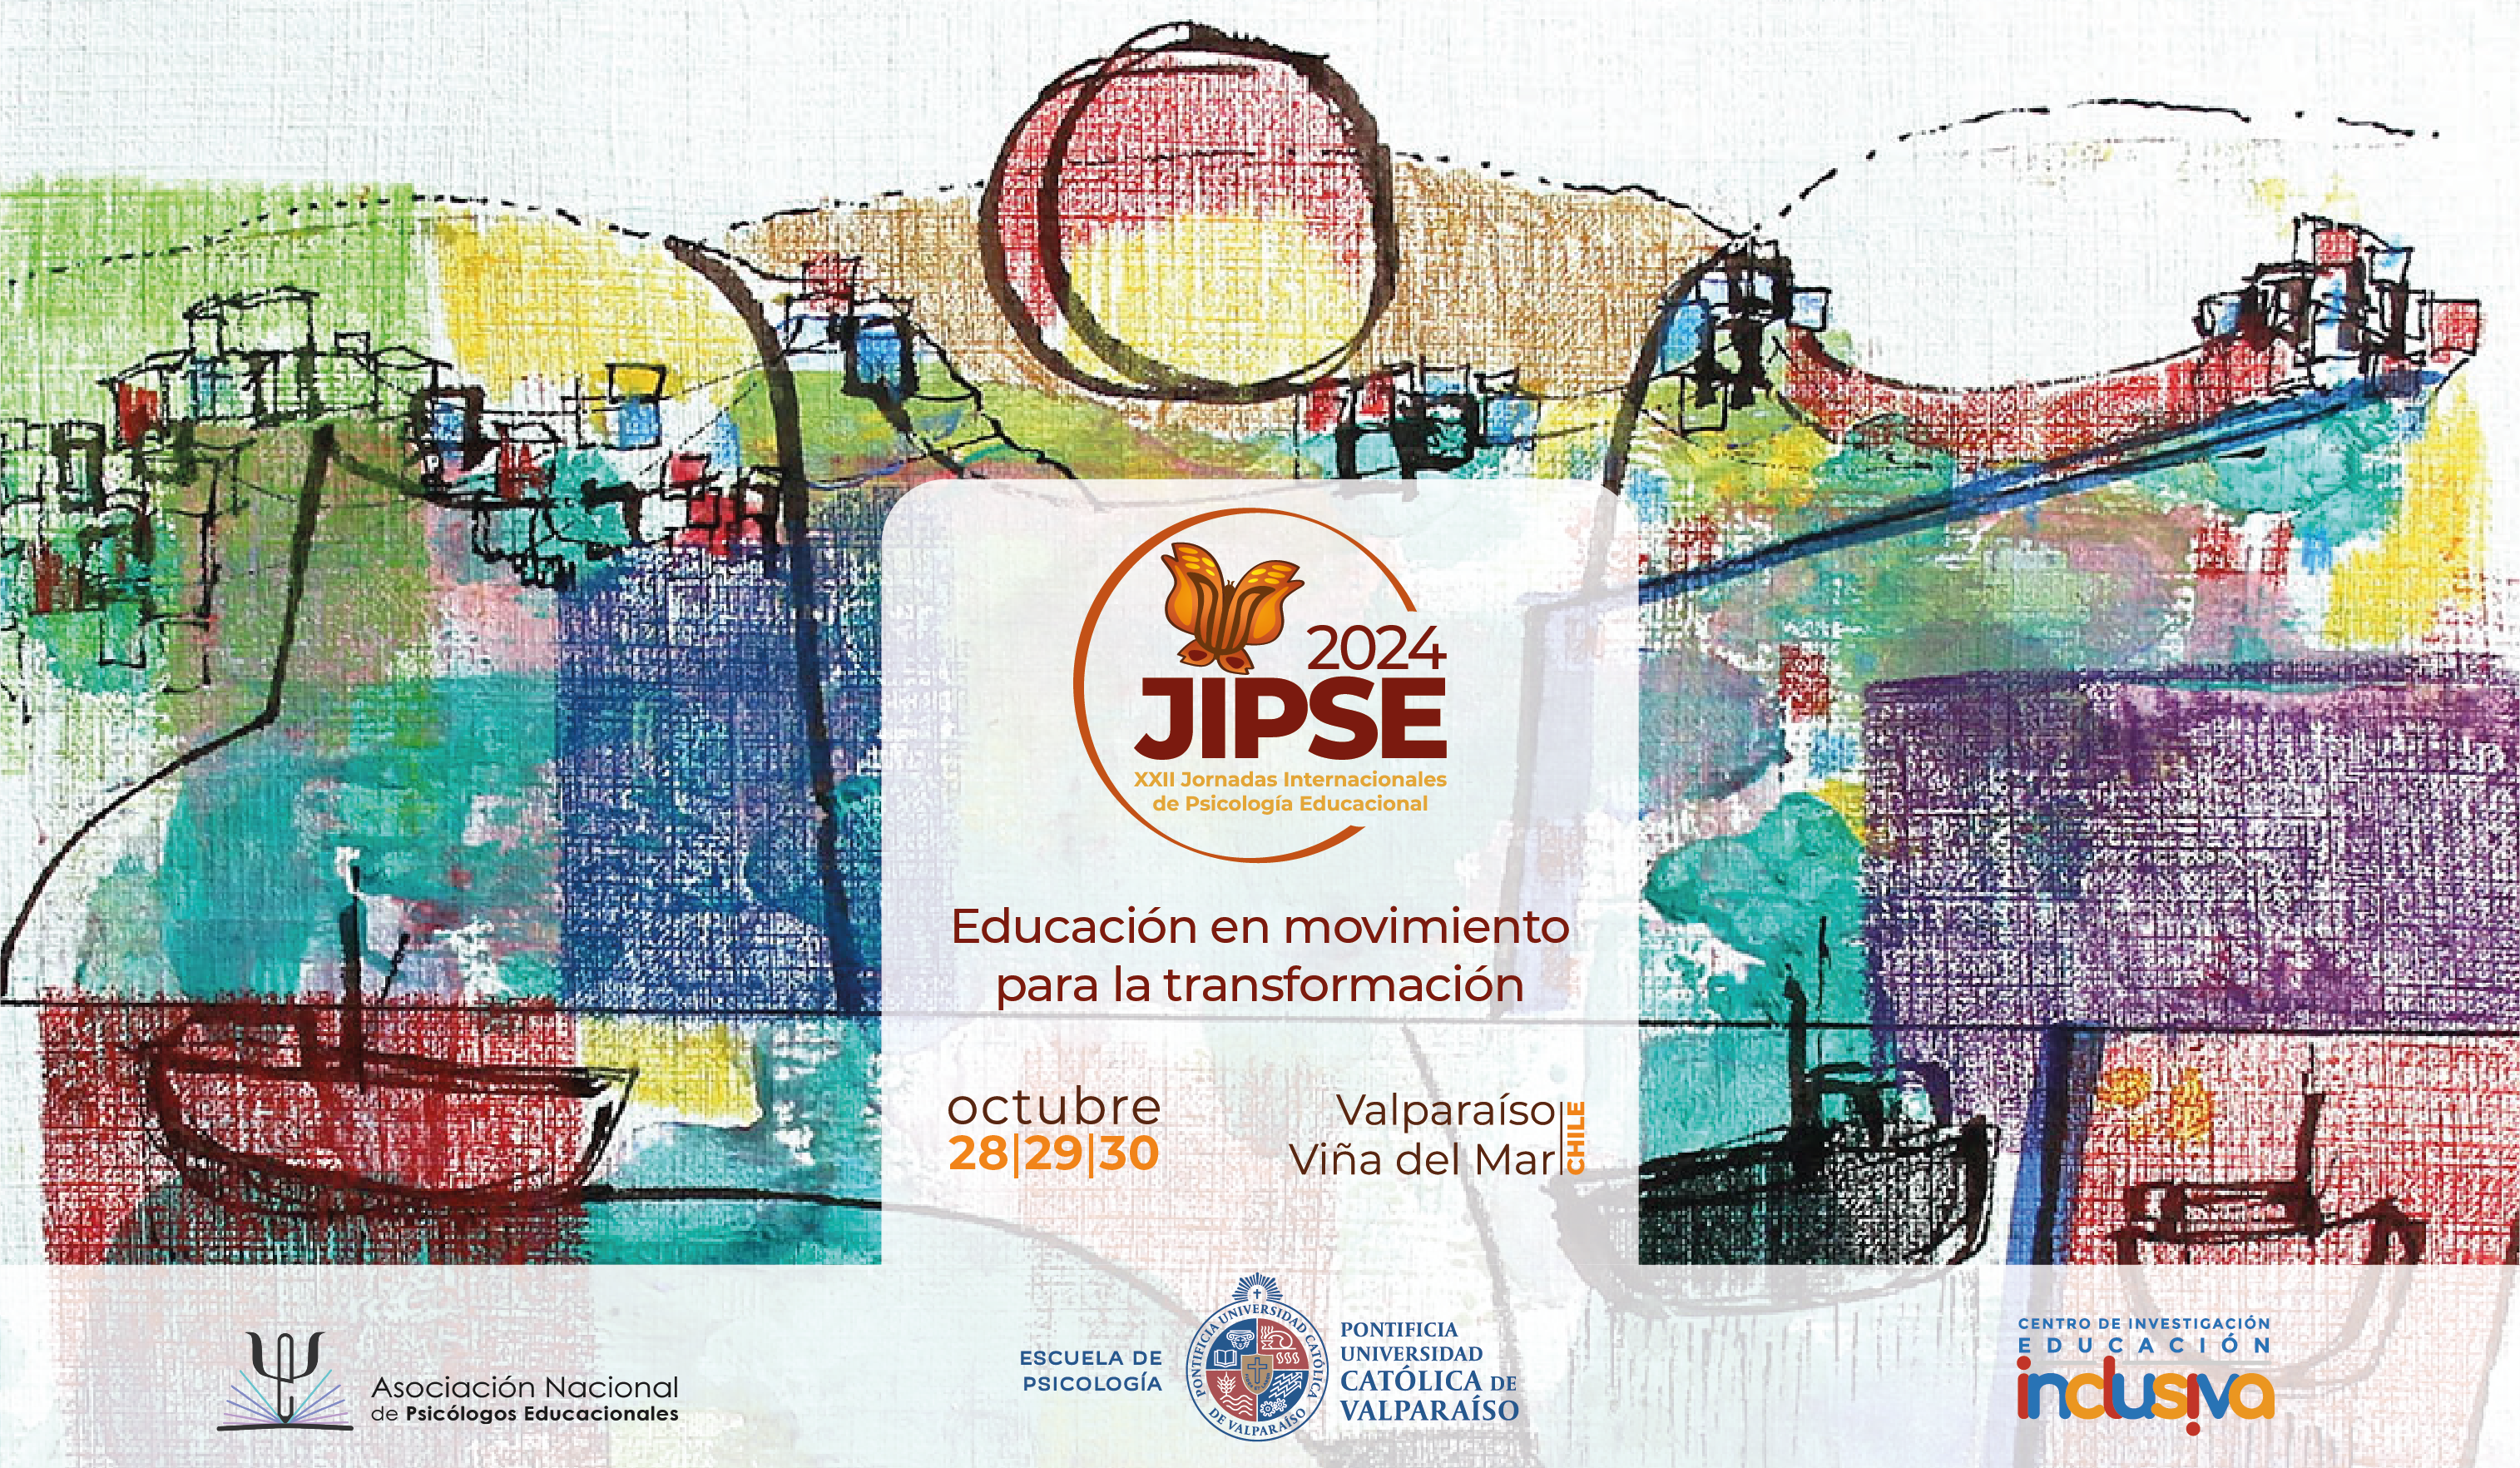 [Llamado abierto] XXII Jornadas Internacionales de Psicología Educacional JIPSE